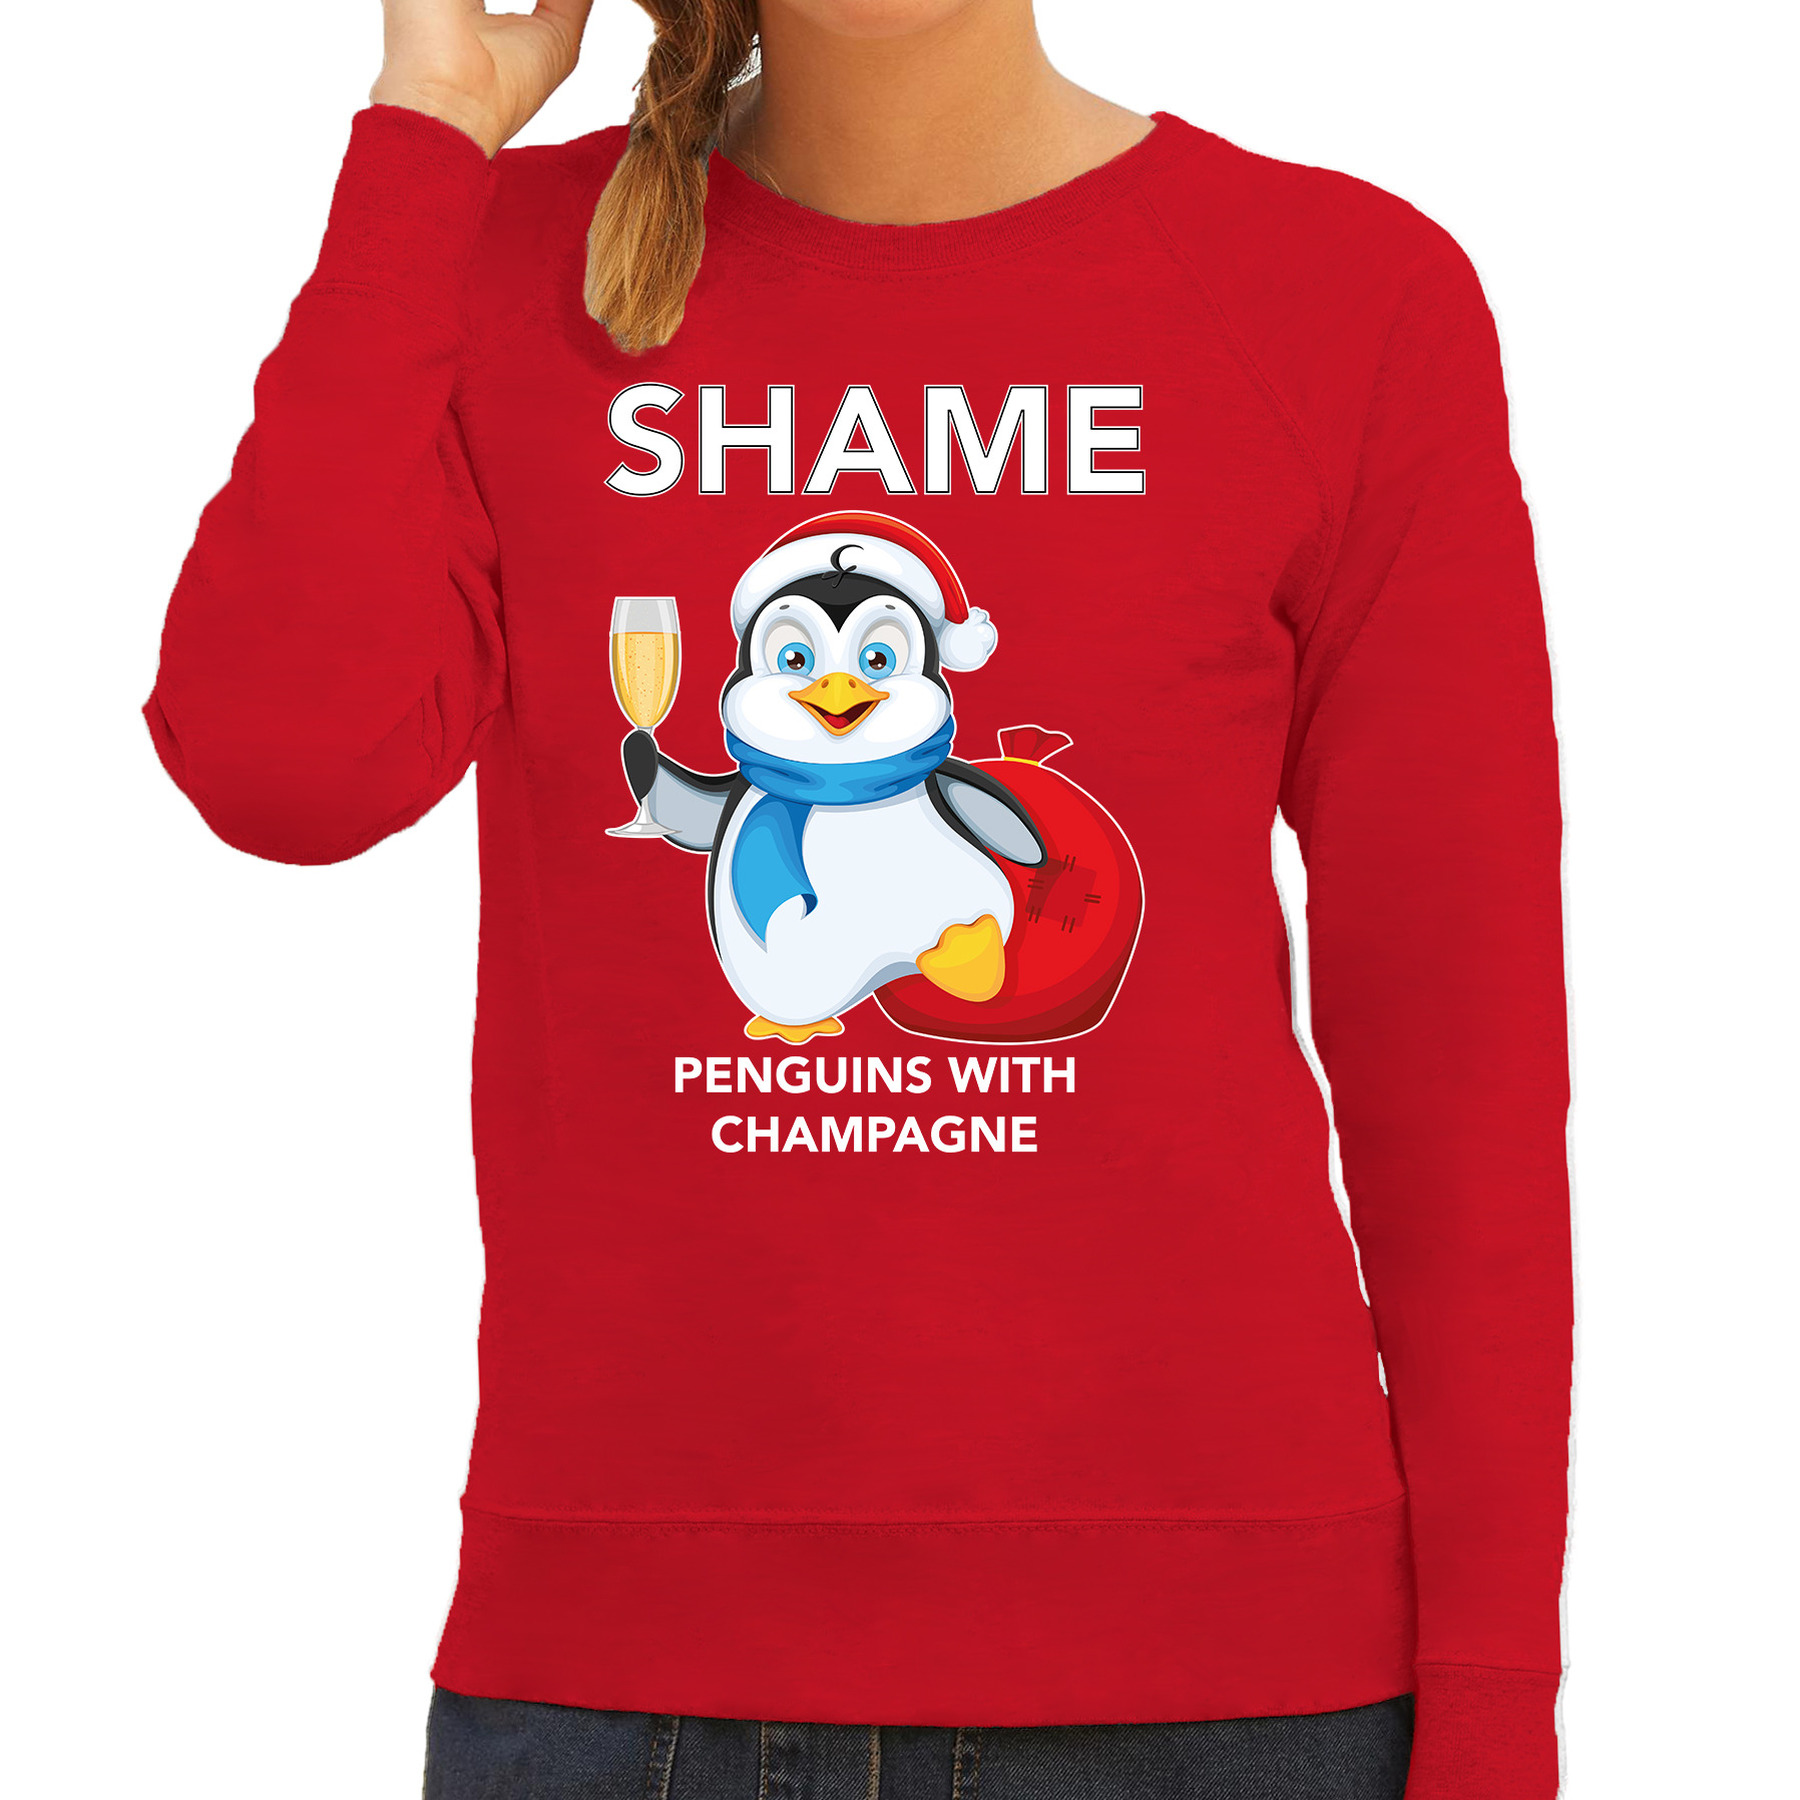 Rode Kersttrui-Kerstkleding met pinguin Shame penguins with champagne voor dames